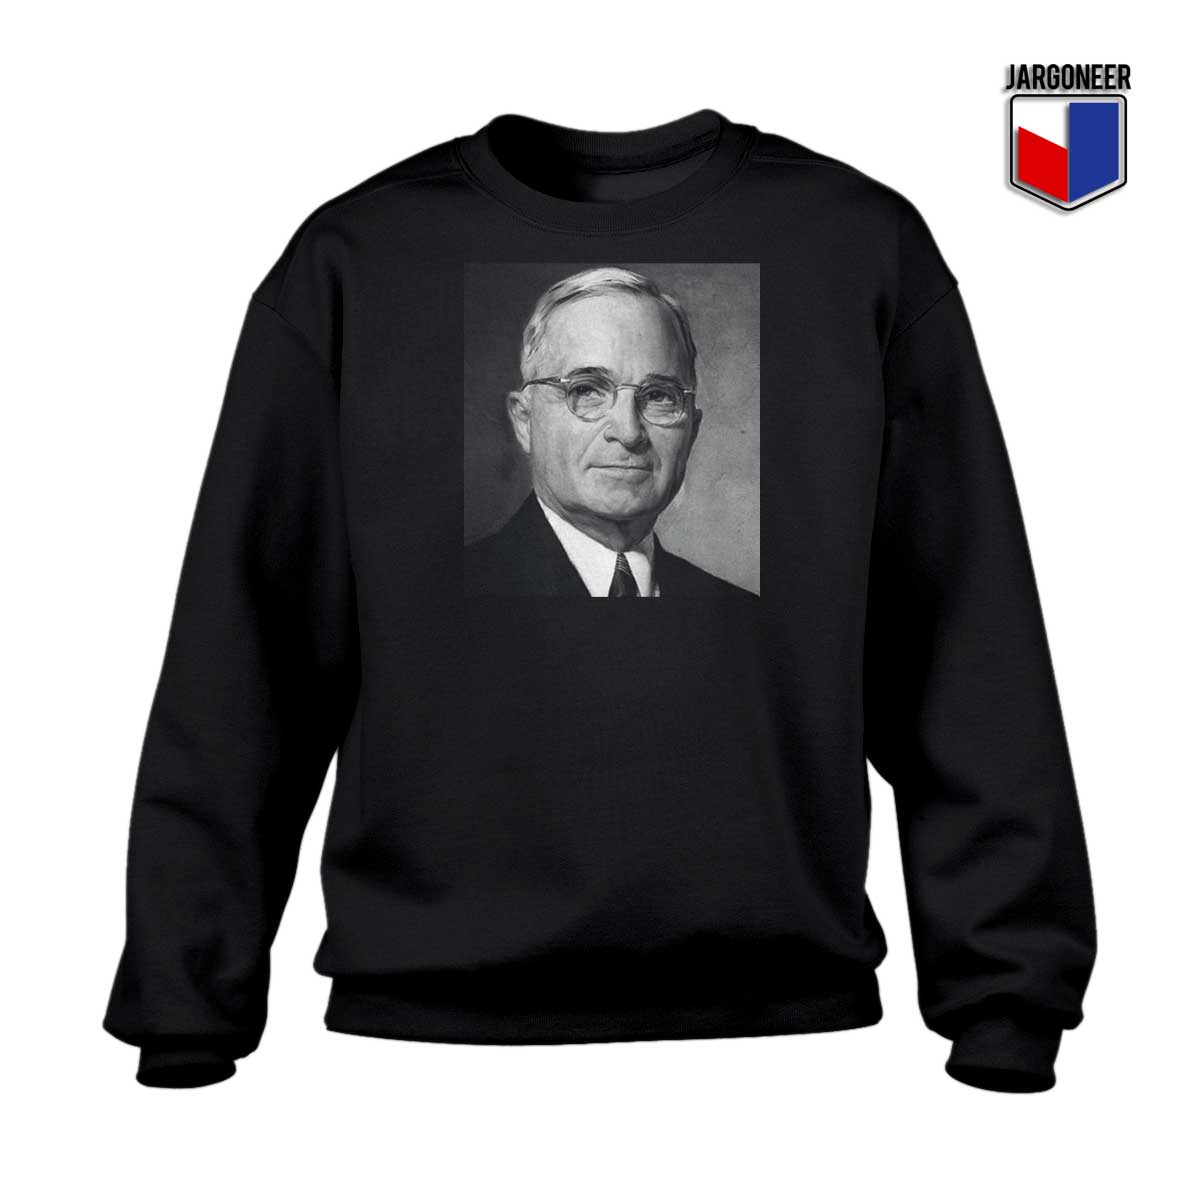 Harry S Truman President Sweatshirt - Shop Unique Graphic Cool Shirt Designs